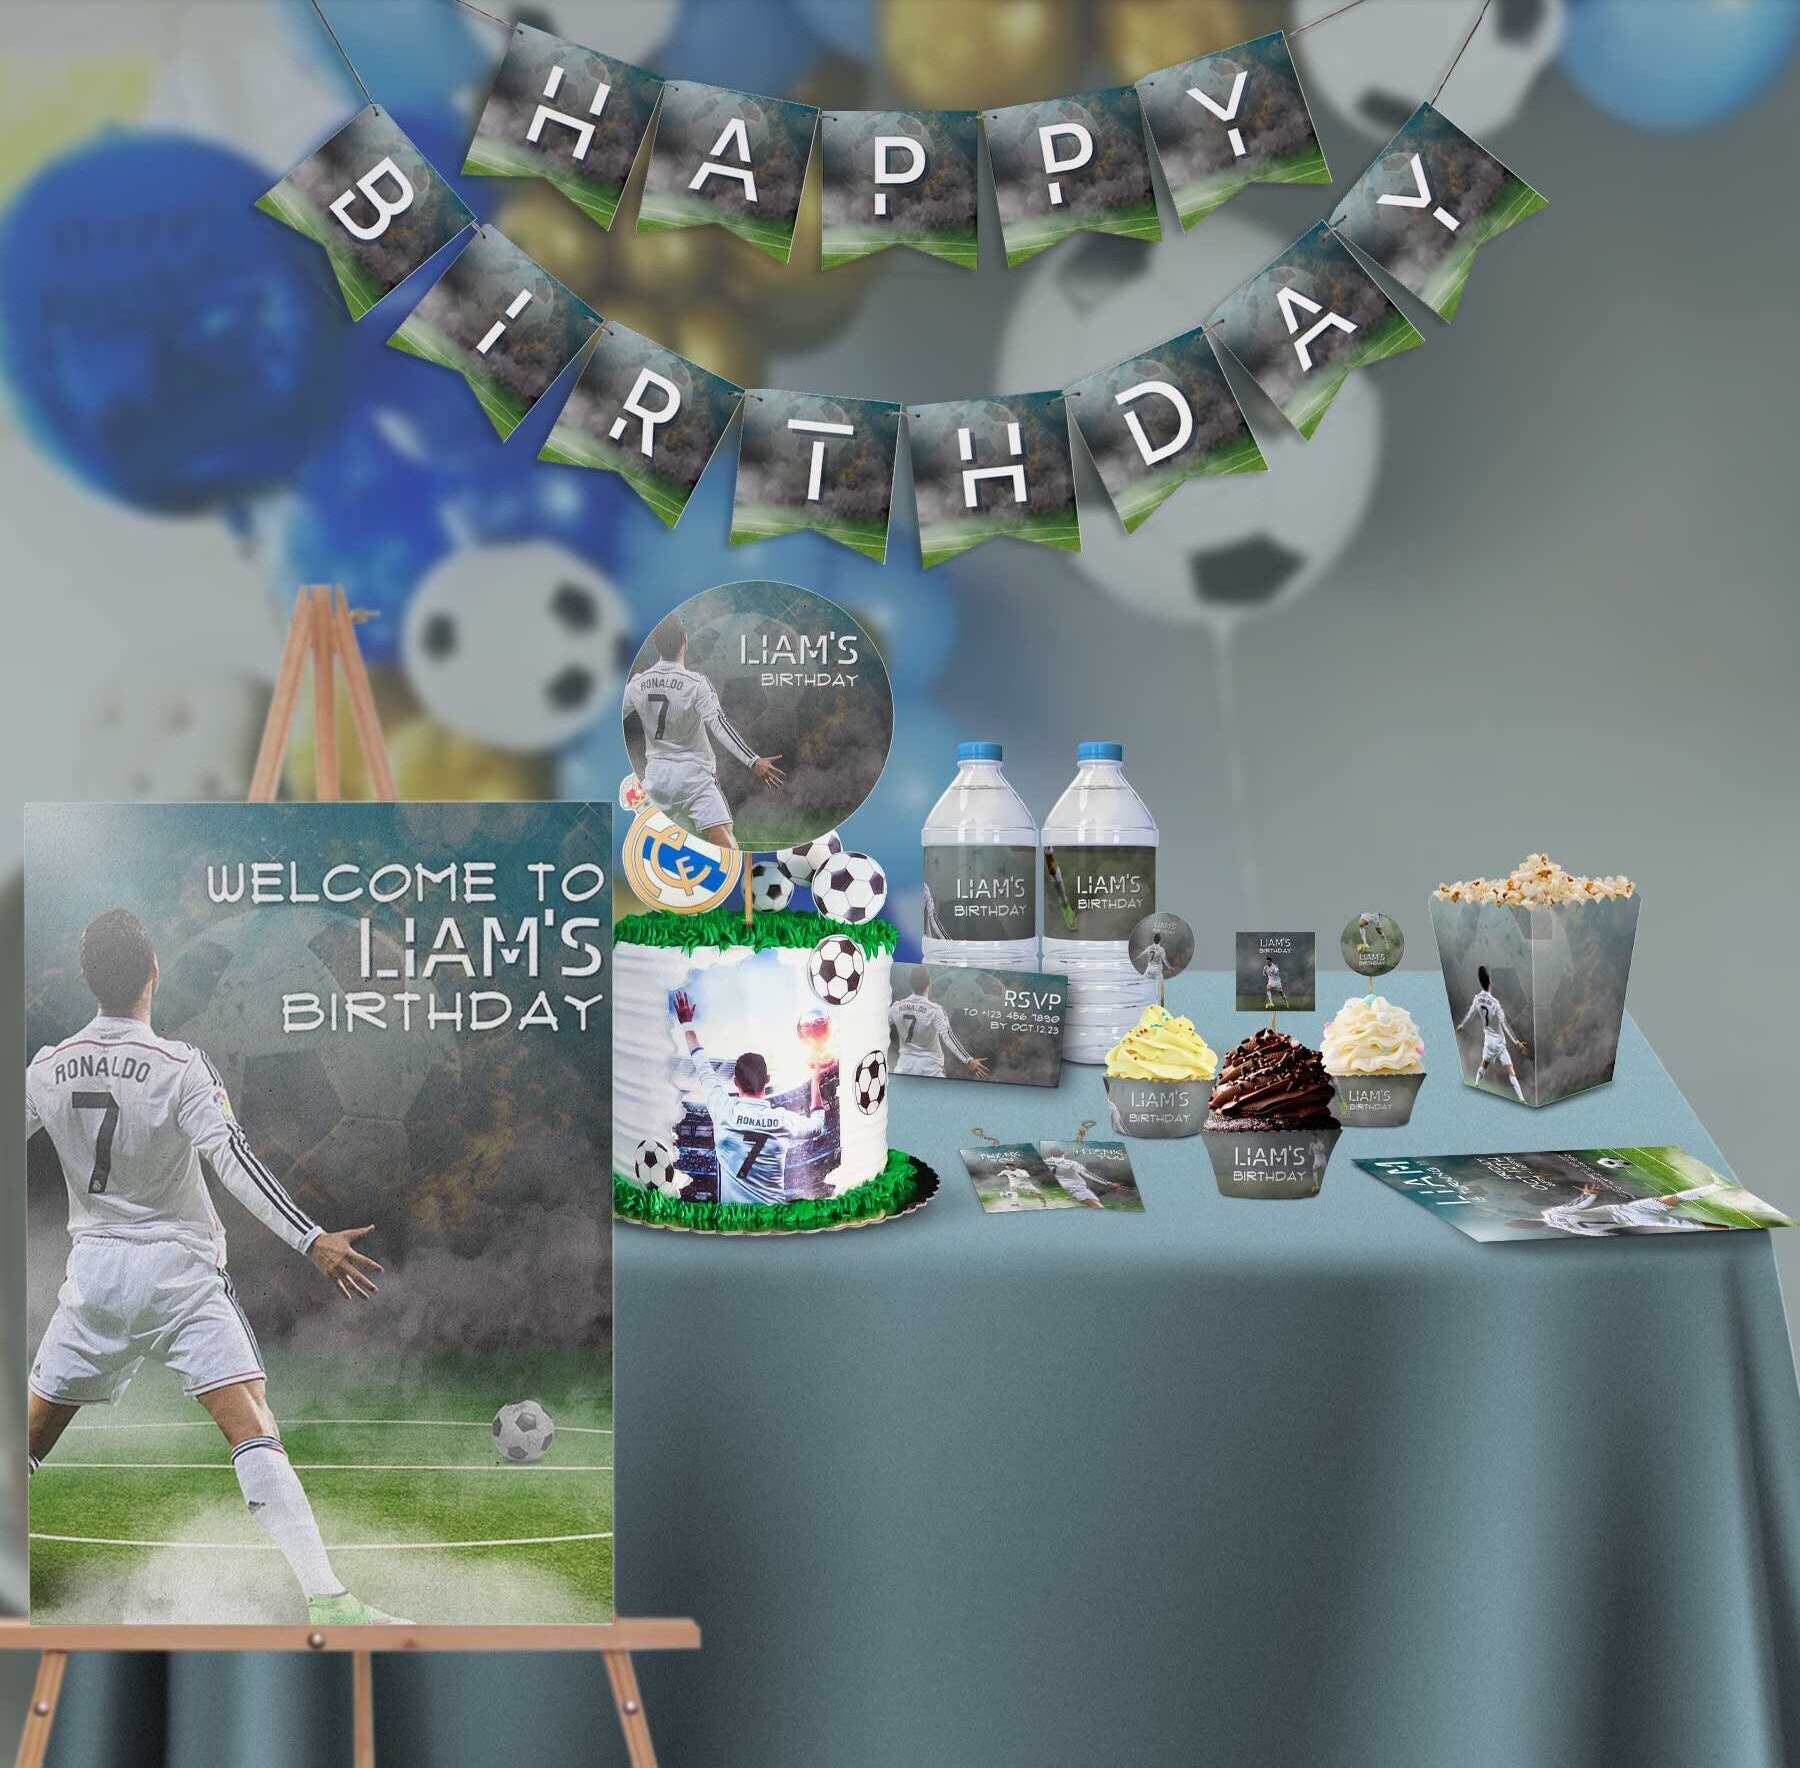 Real Madrid Lot de décorations pour fête d'anniversaire Thème Ballons Nappe  Drapeau Cupcakes – Tout en un : : Santé et Soins personnels